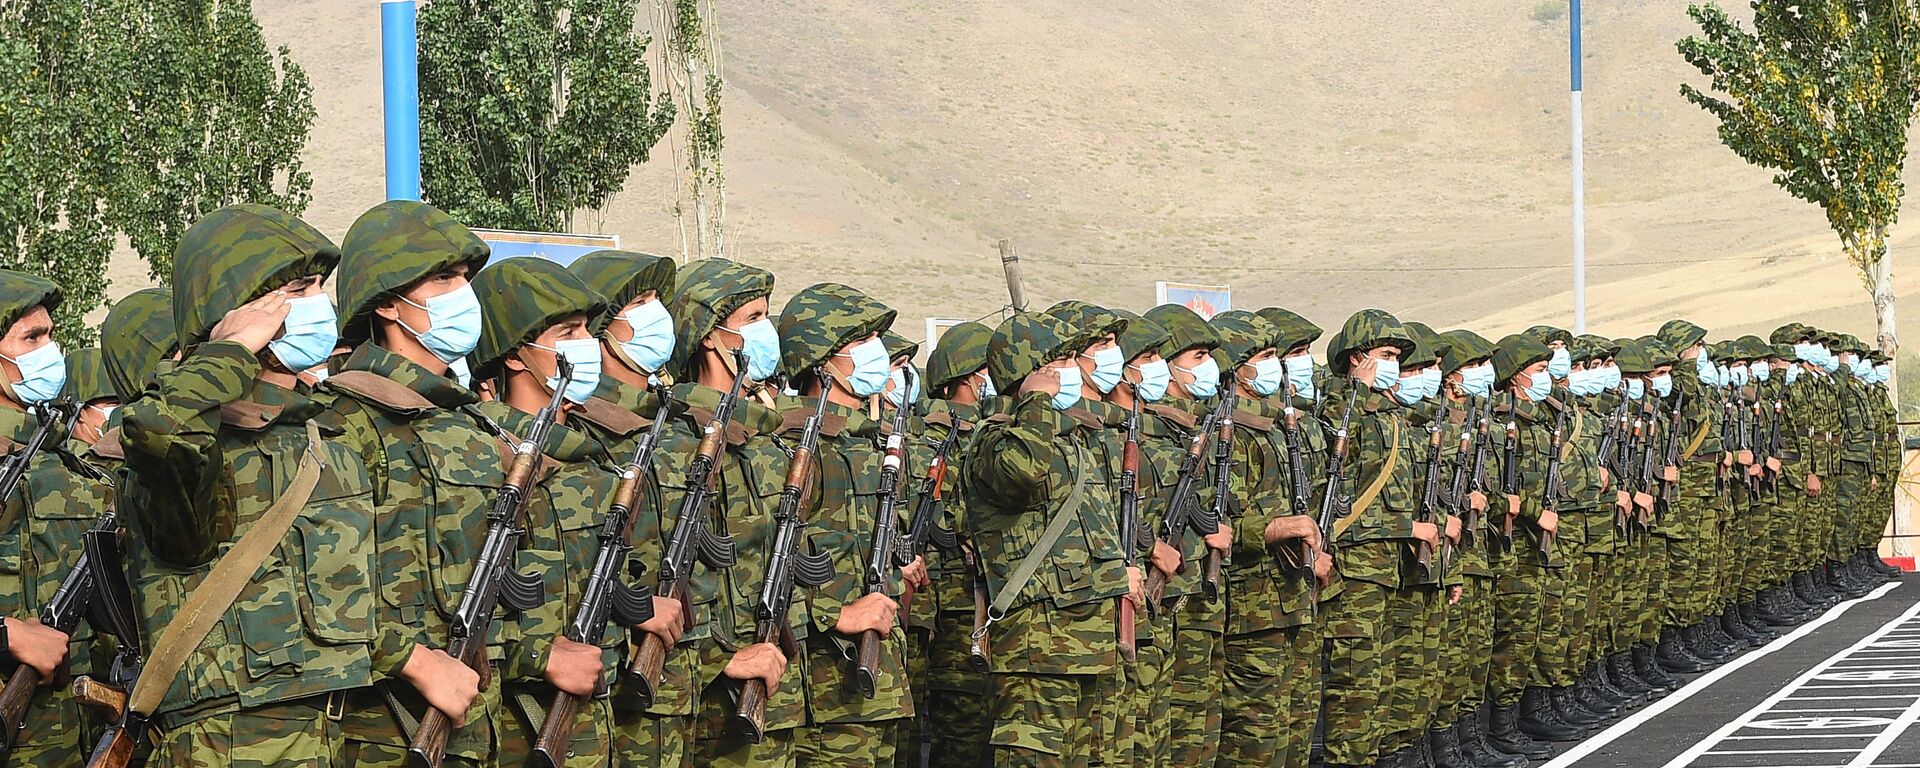 Таджикские солдаты на построении - Sputnik Таджикистан, 1920, 01.04.2021